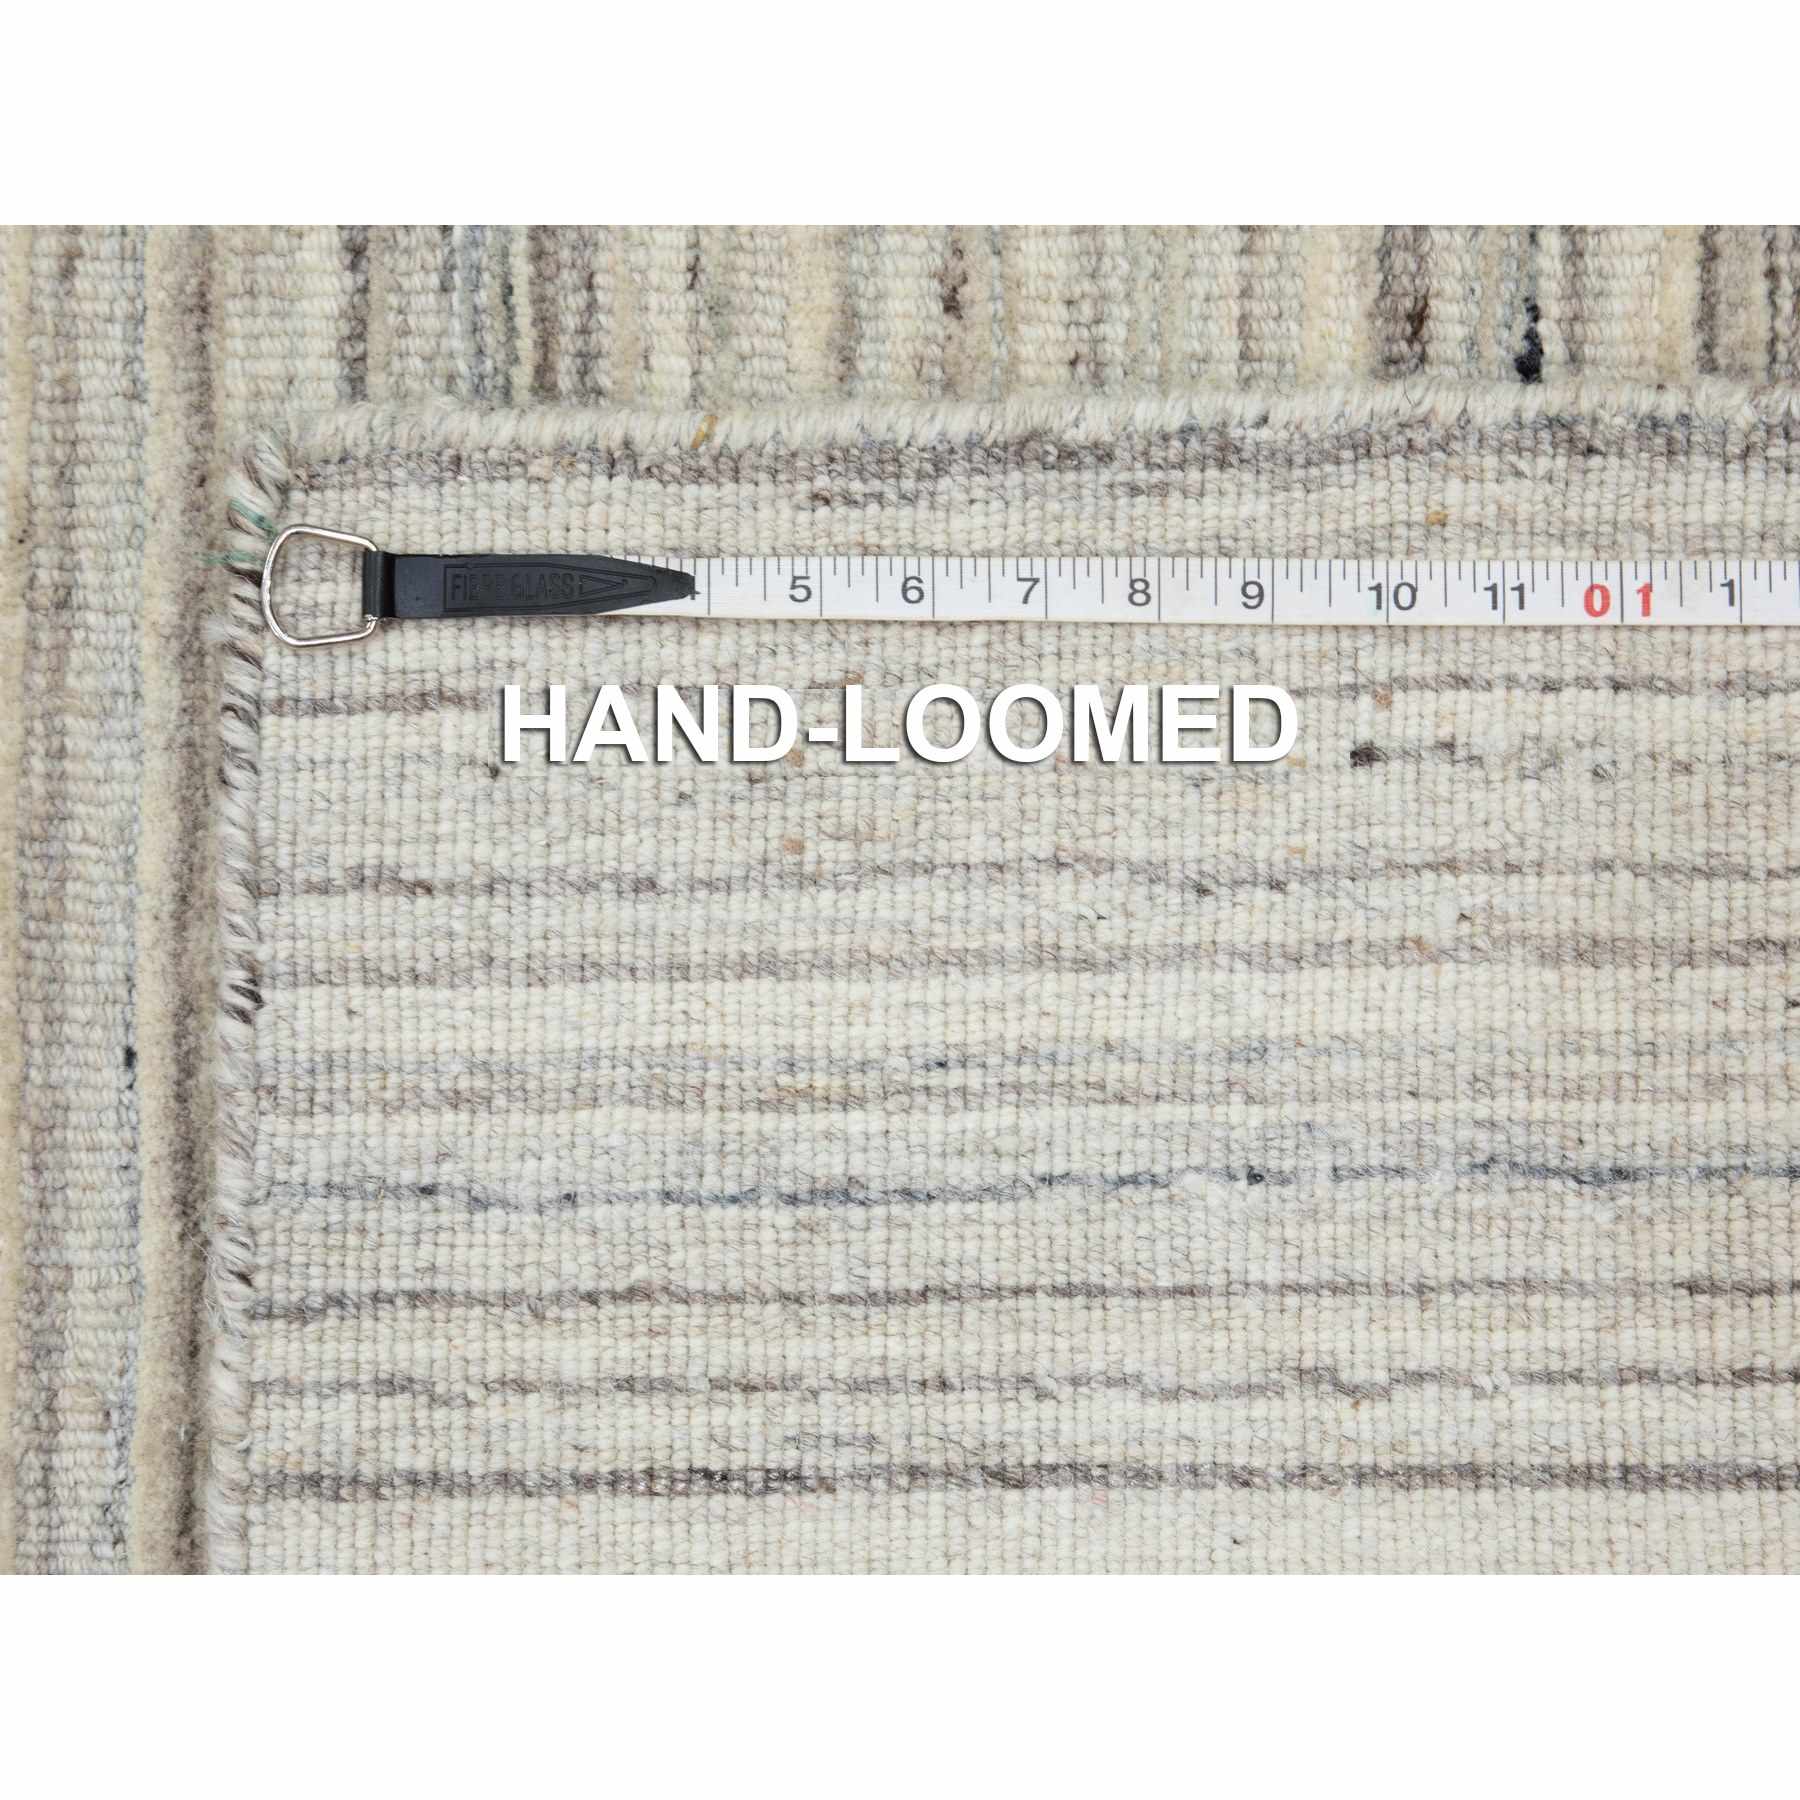 Hand-Loomed-Hand-Loomed-Rug-291790